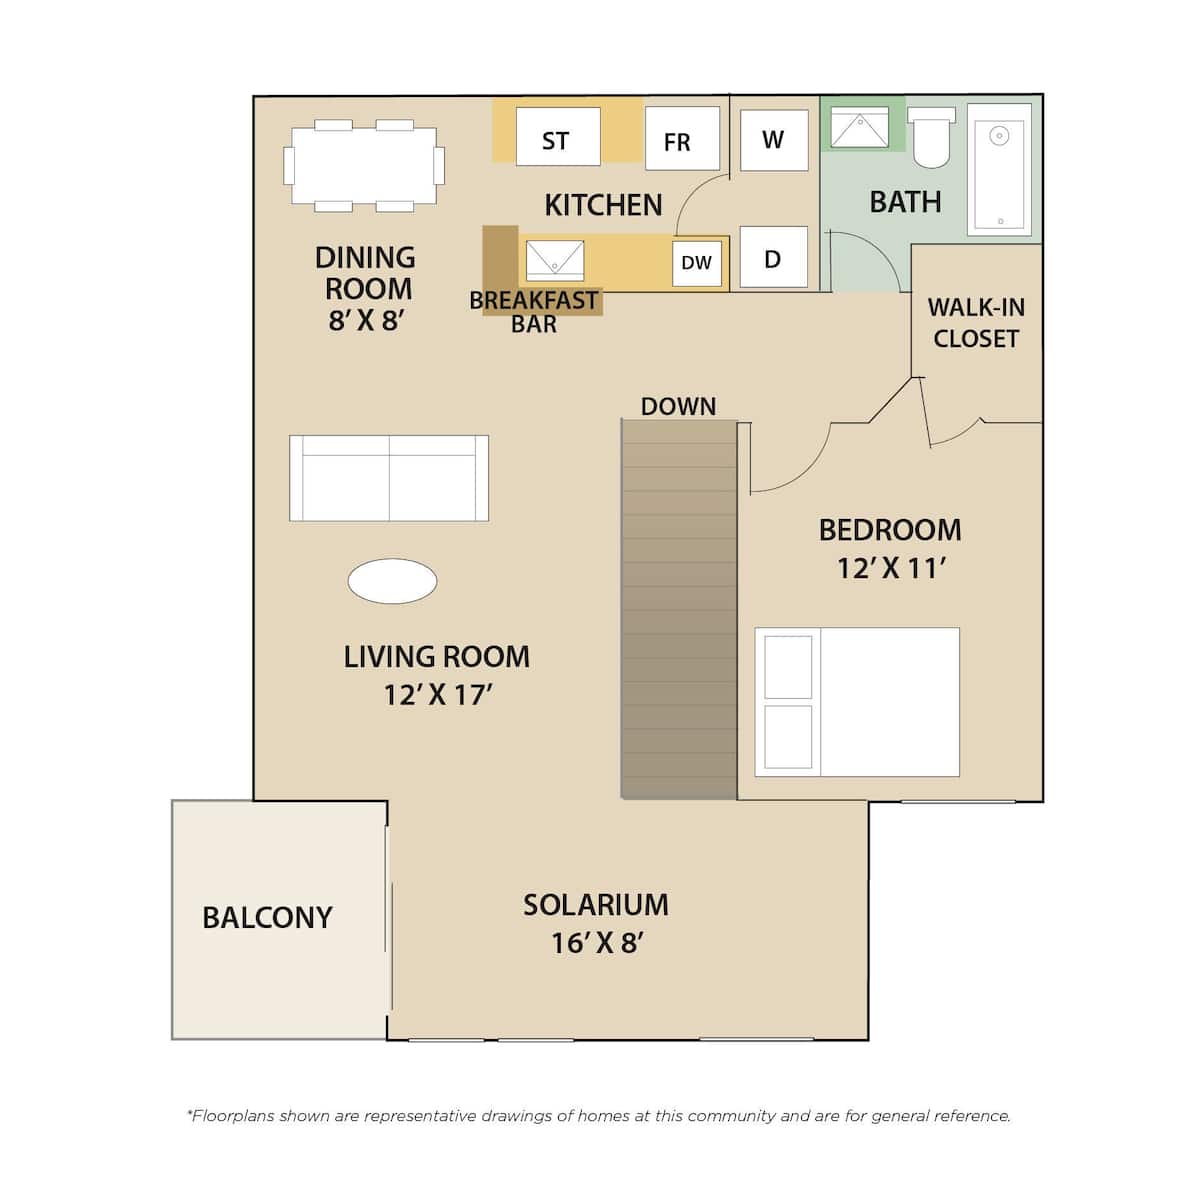 Floorplan diagram for Lake Ontario, showing 1 bedroom